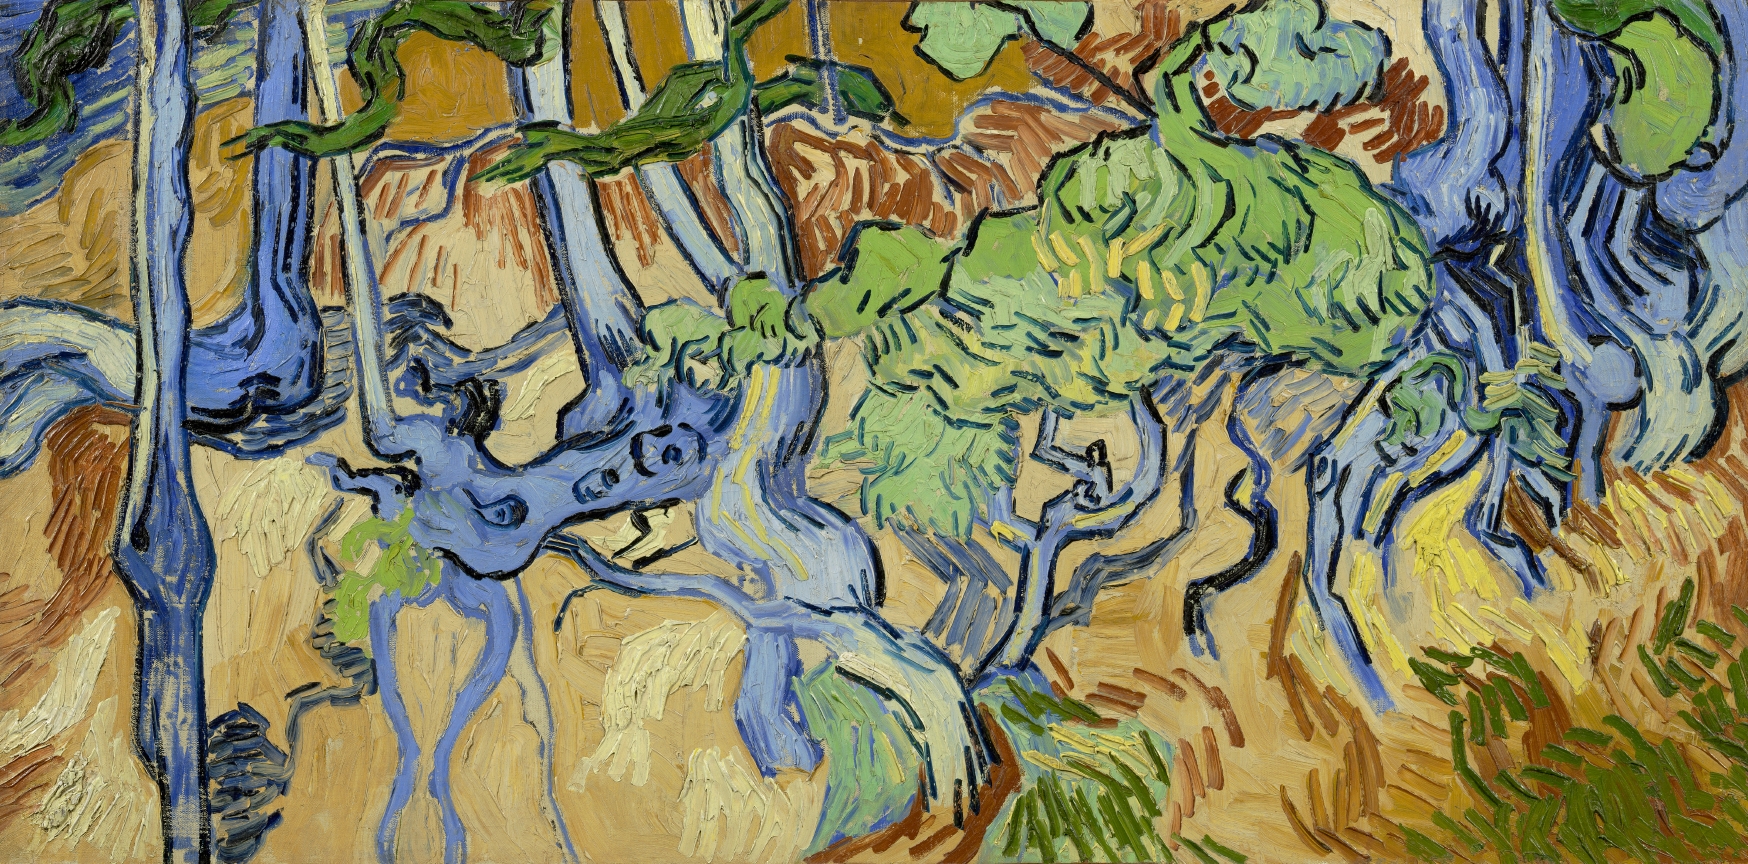 Vincent van Gogh (1853-1890), Racines d’arbres, 1890. Huile sur toile, 50,3 x 100,1 cm. Amsterdam, Van Gogh Museum (Vincent van Gogh Foundation). Photo service de presse. © Van Gogh Museum, Amsterdam (Vincent van Gogh Foundation)